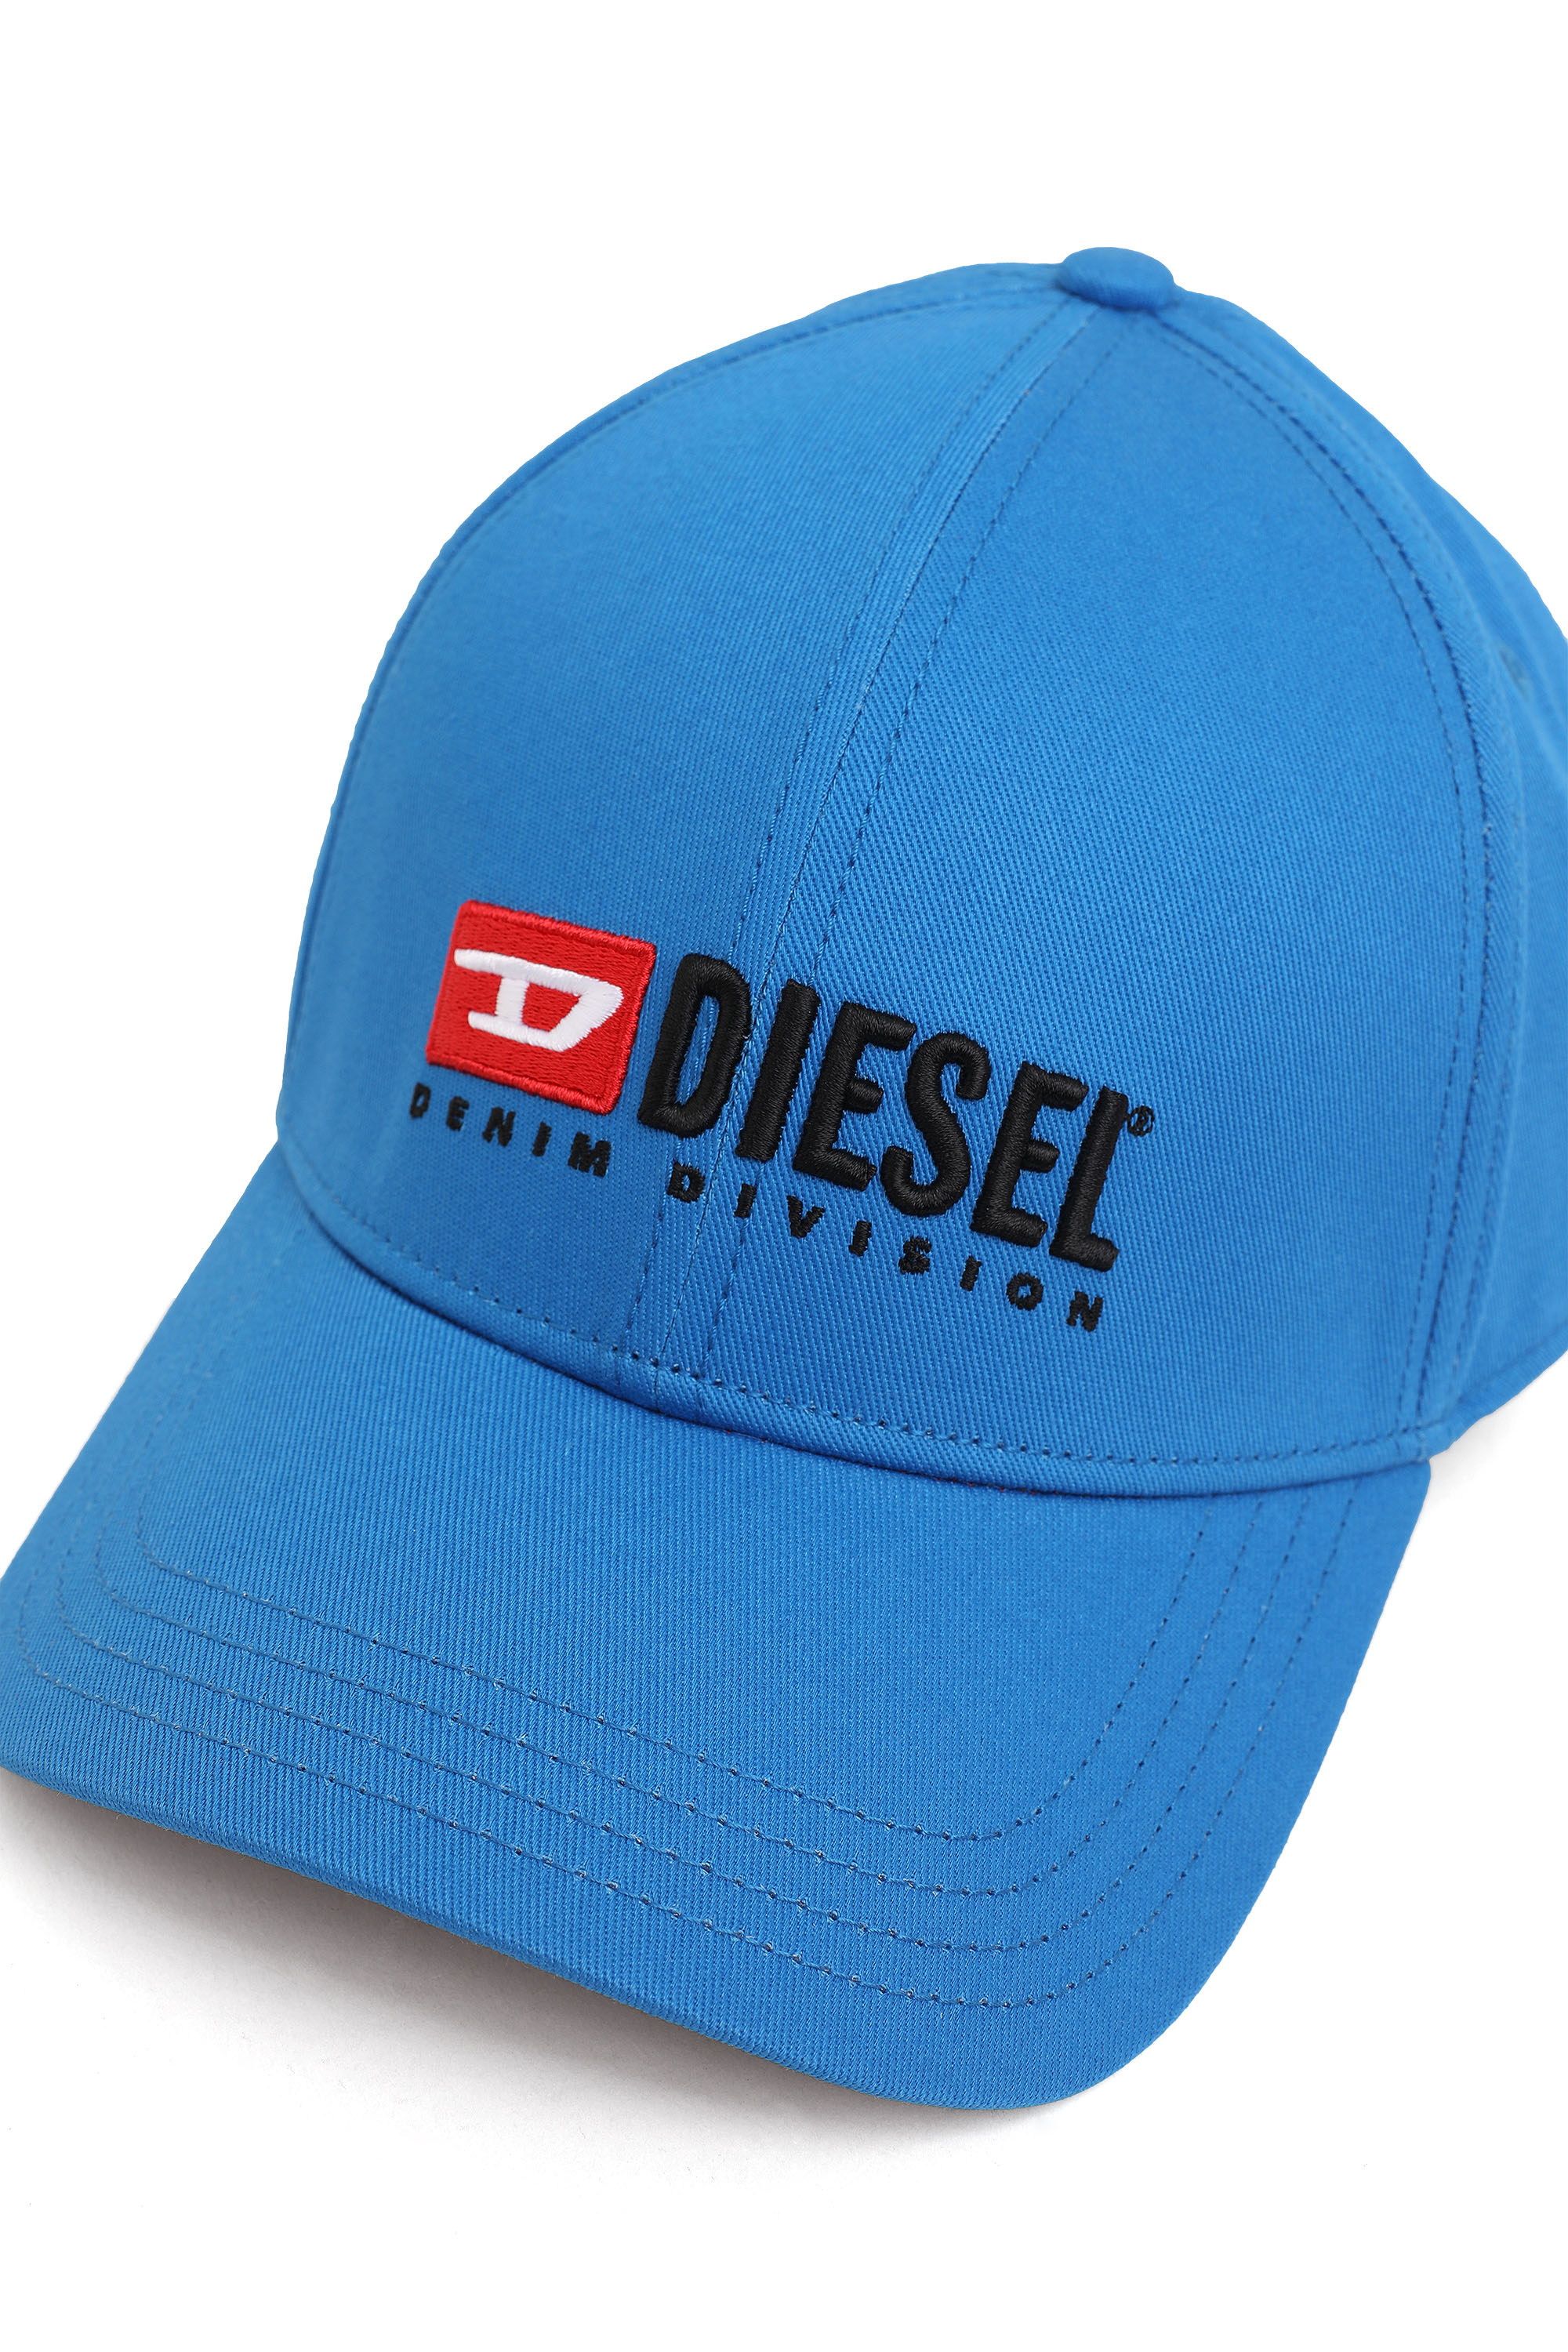 Diesel - CORRY-DIV, Blu - Image 3